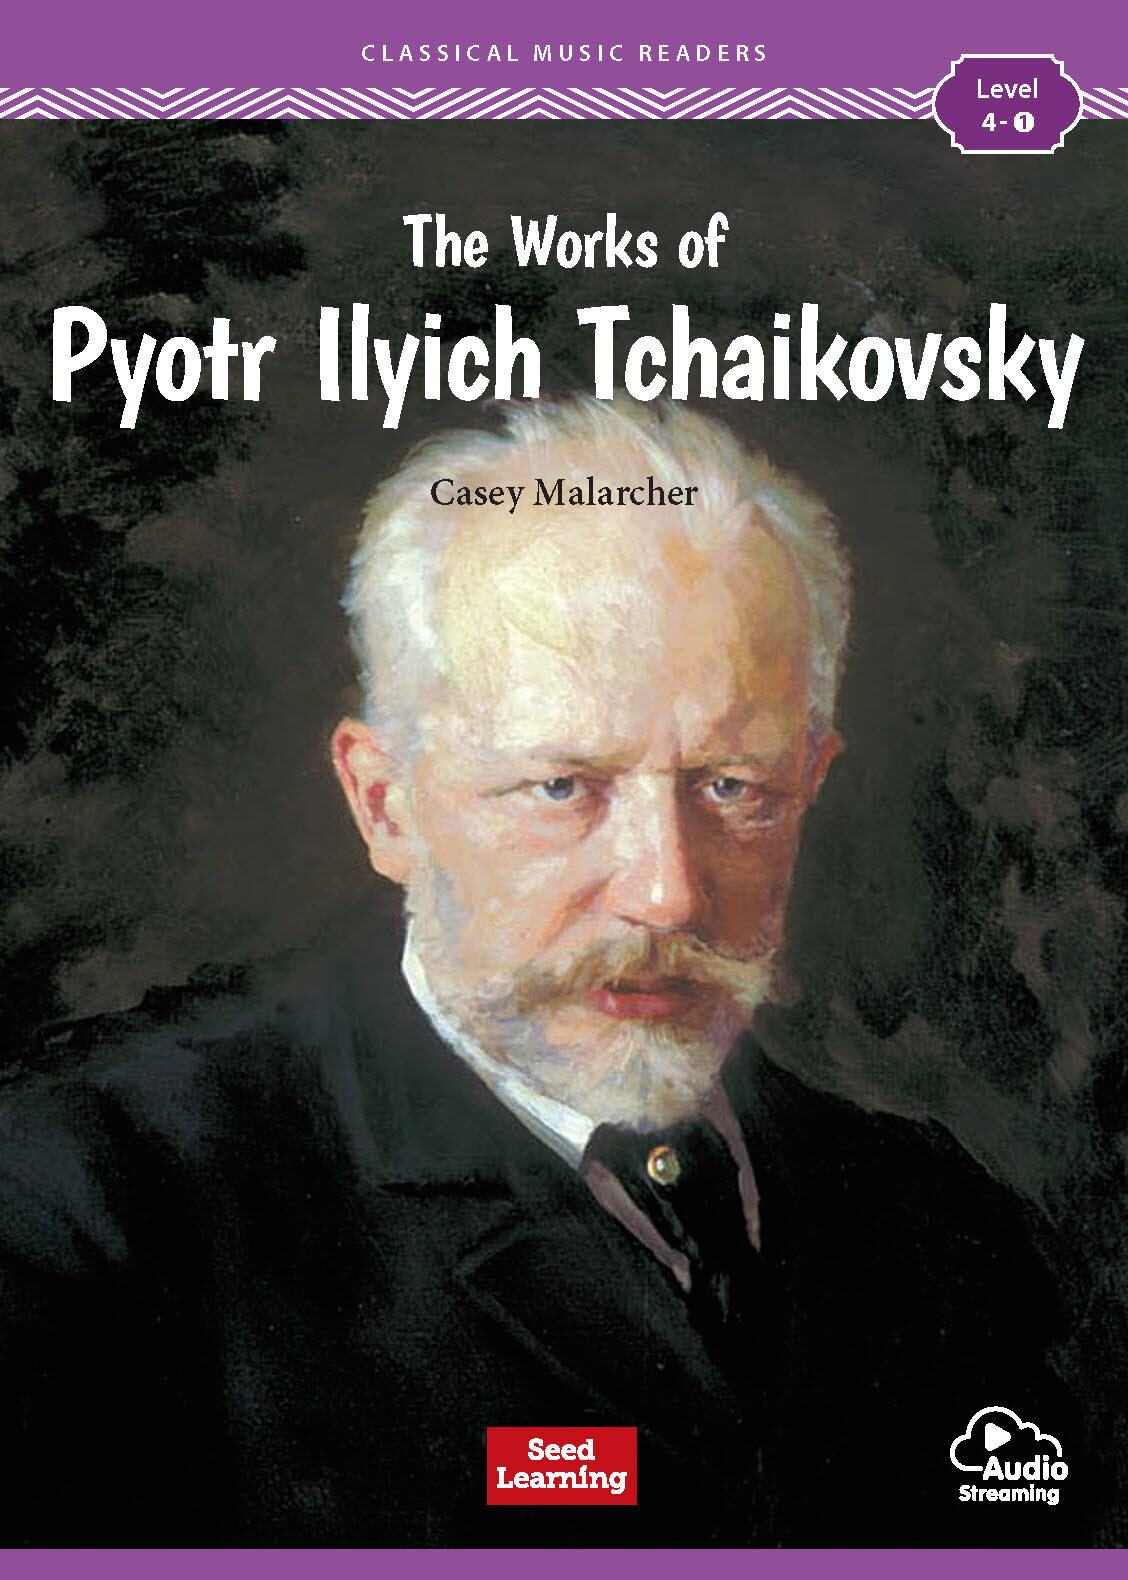 The Works of Pyotr Ilyich Tchaikovsky